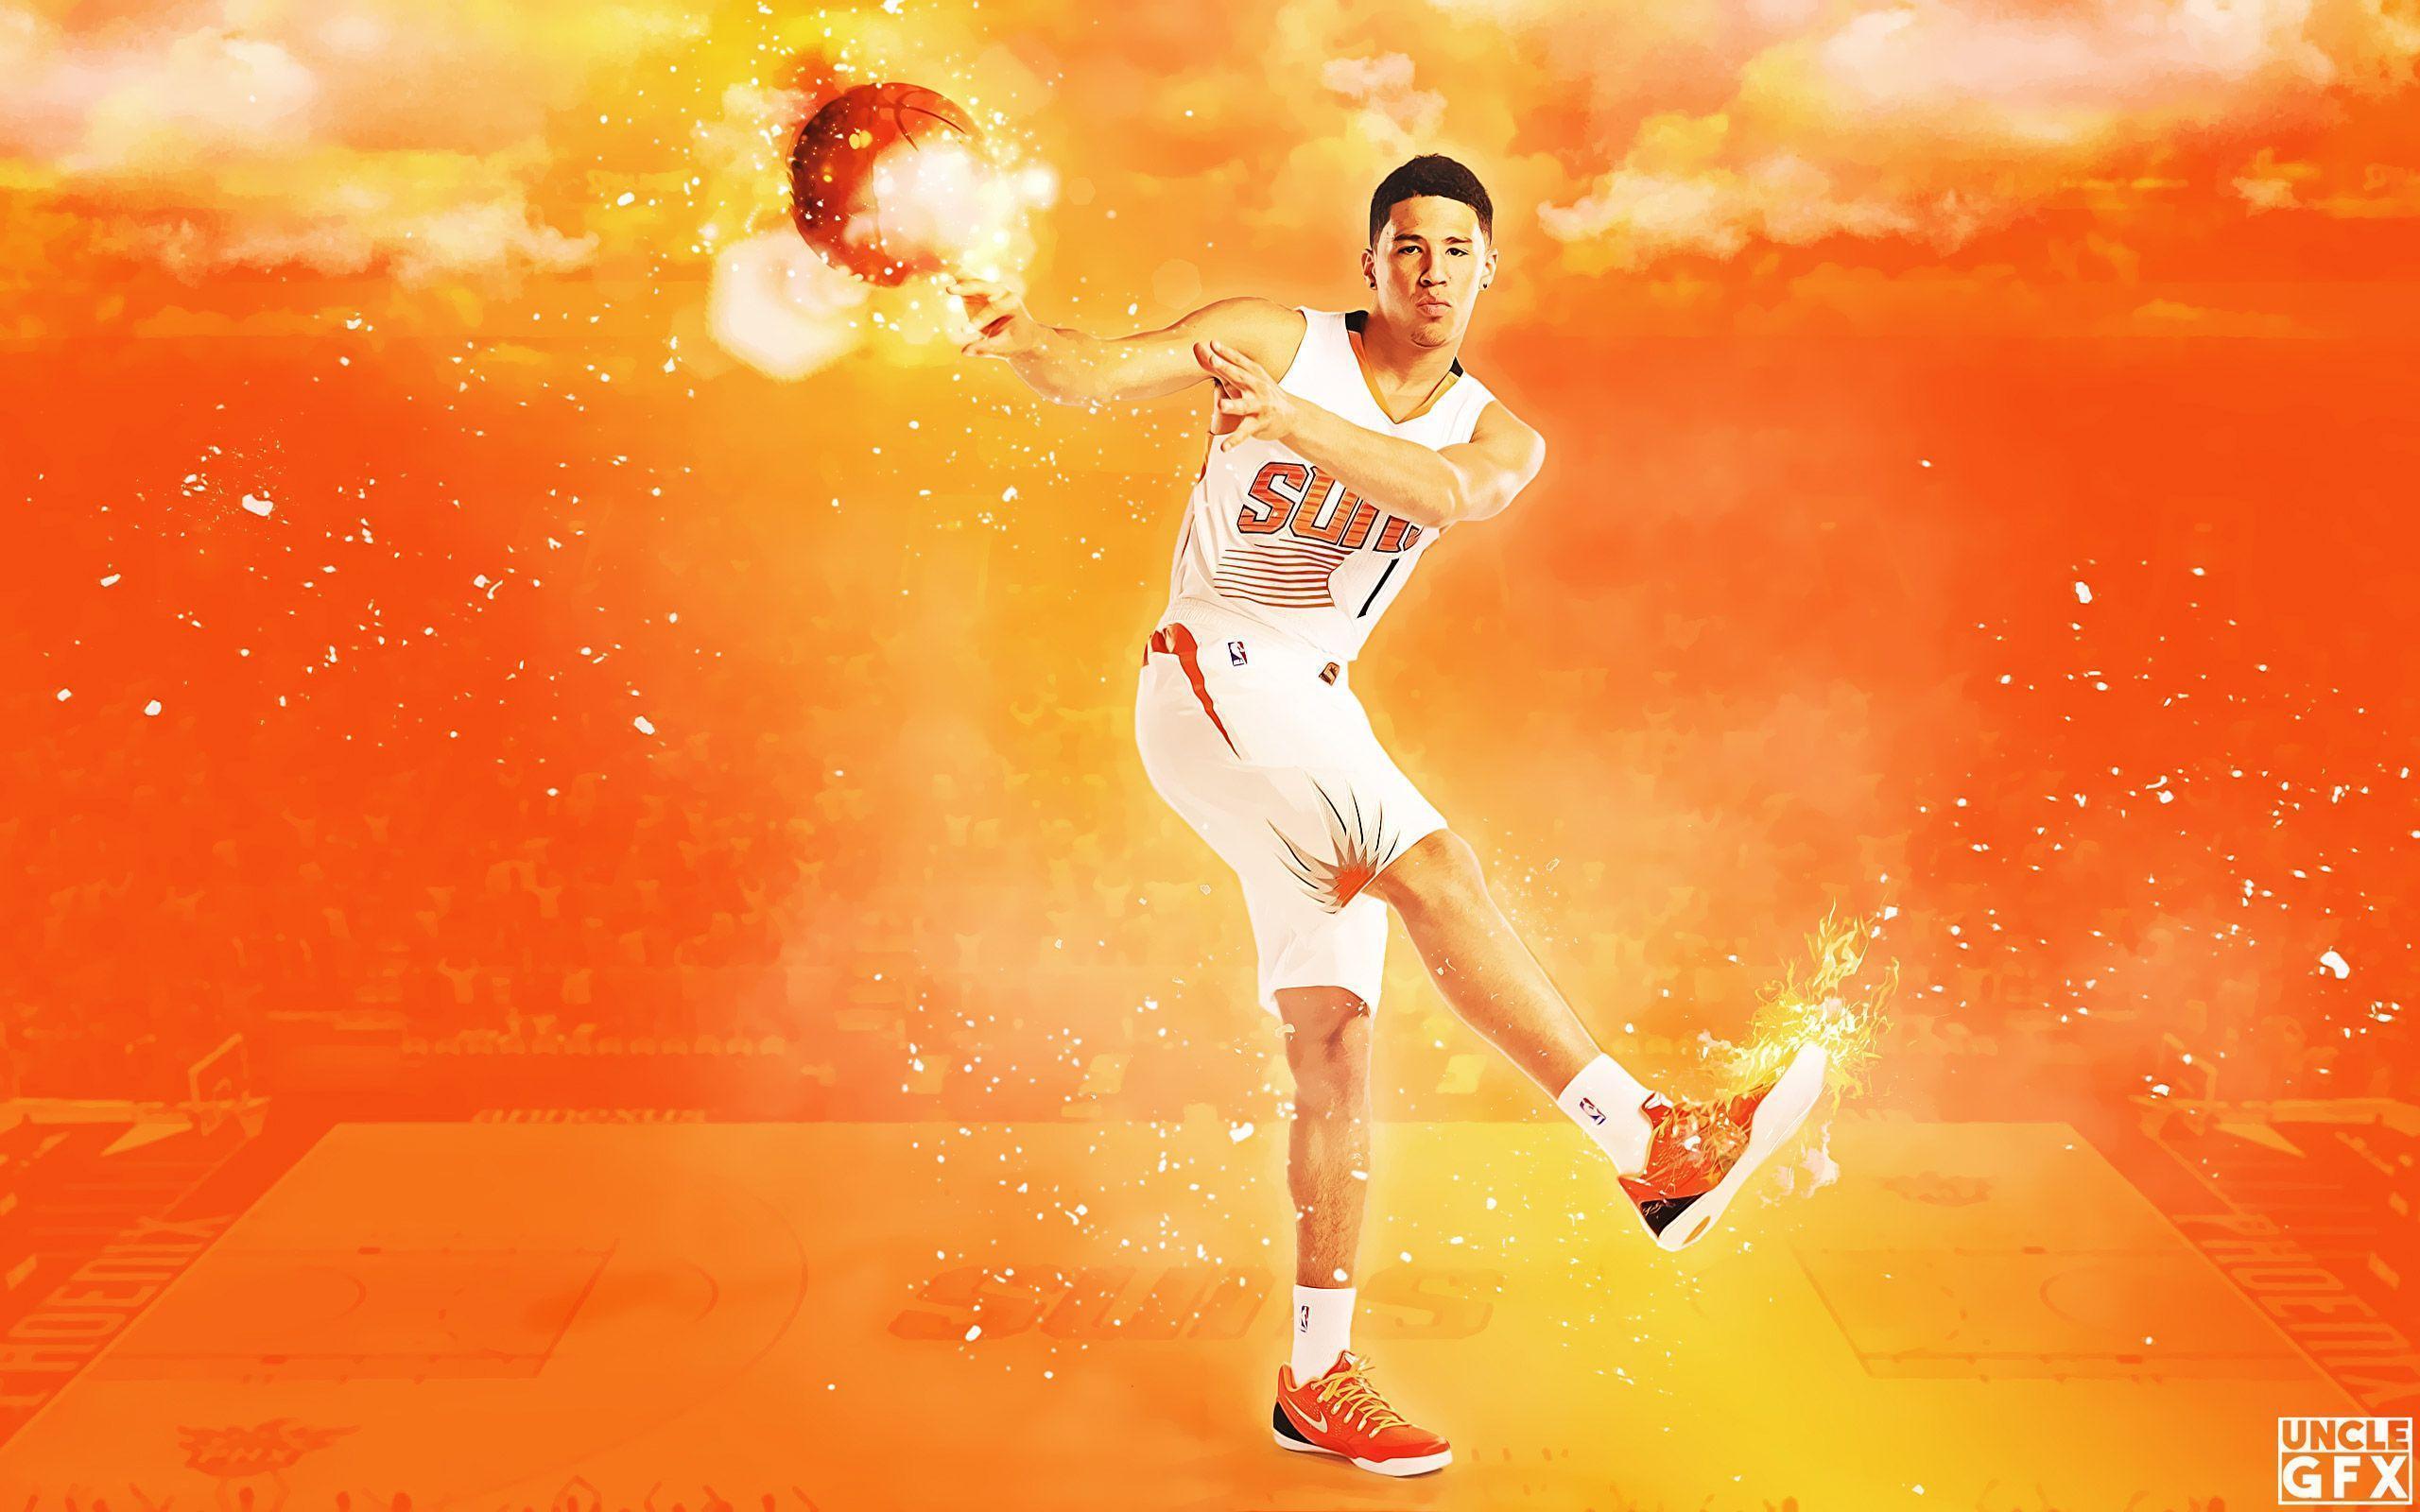 Phoenix Suns Wallpaper. Basketball Wallpaper at